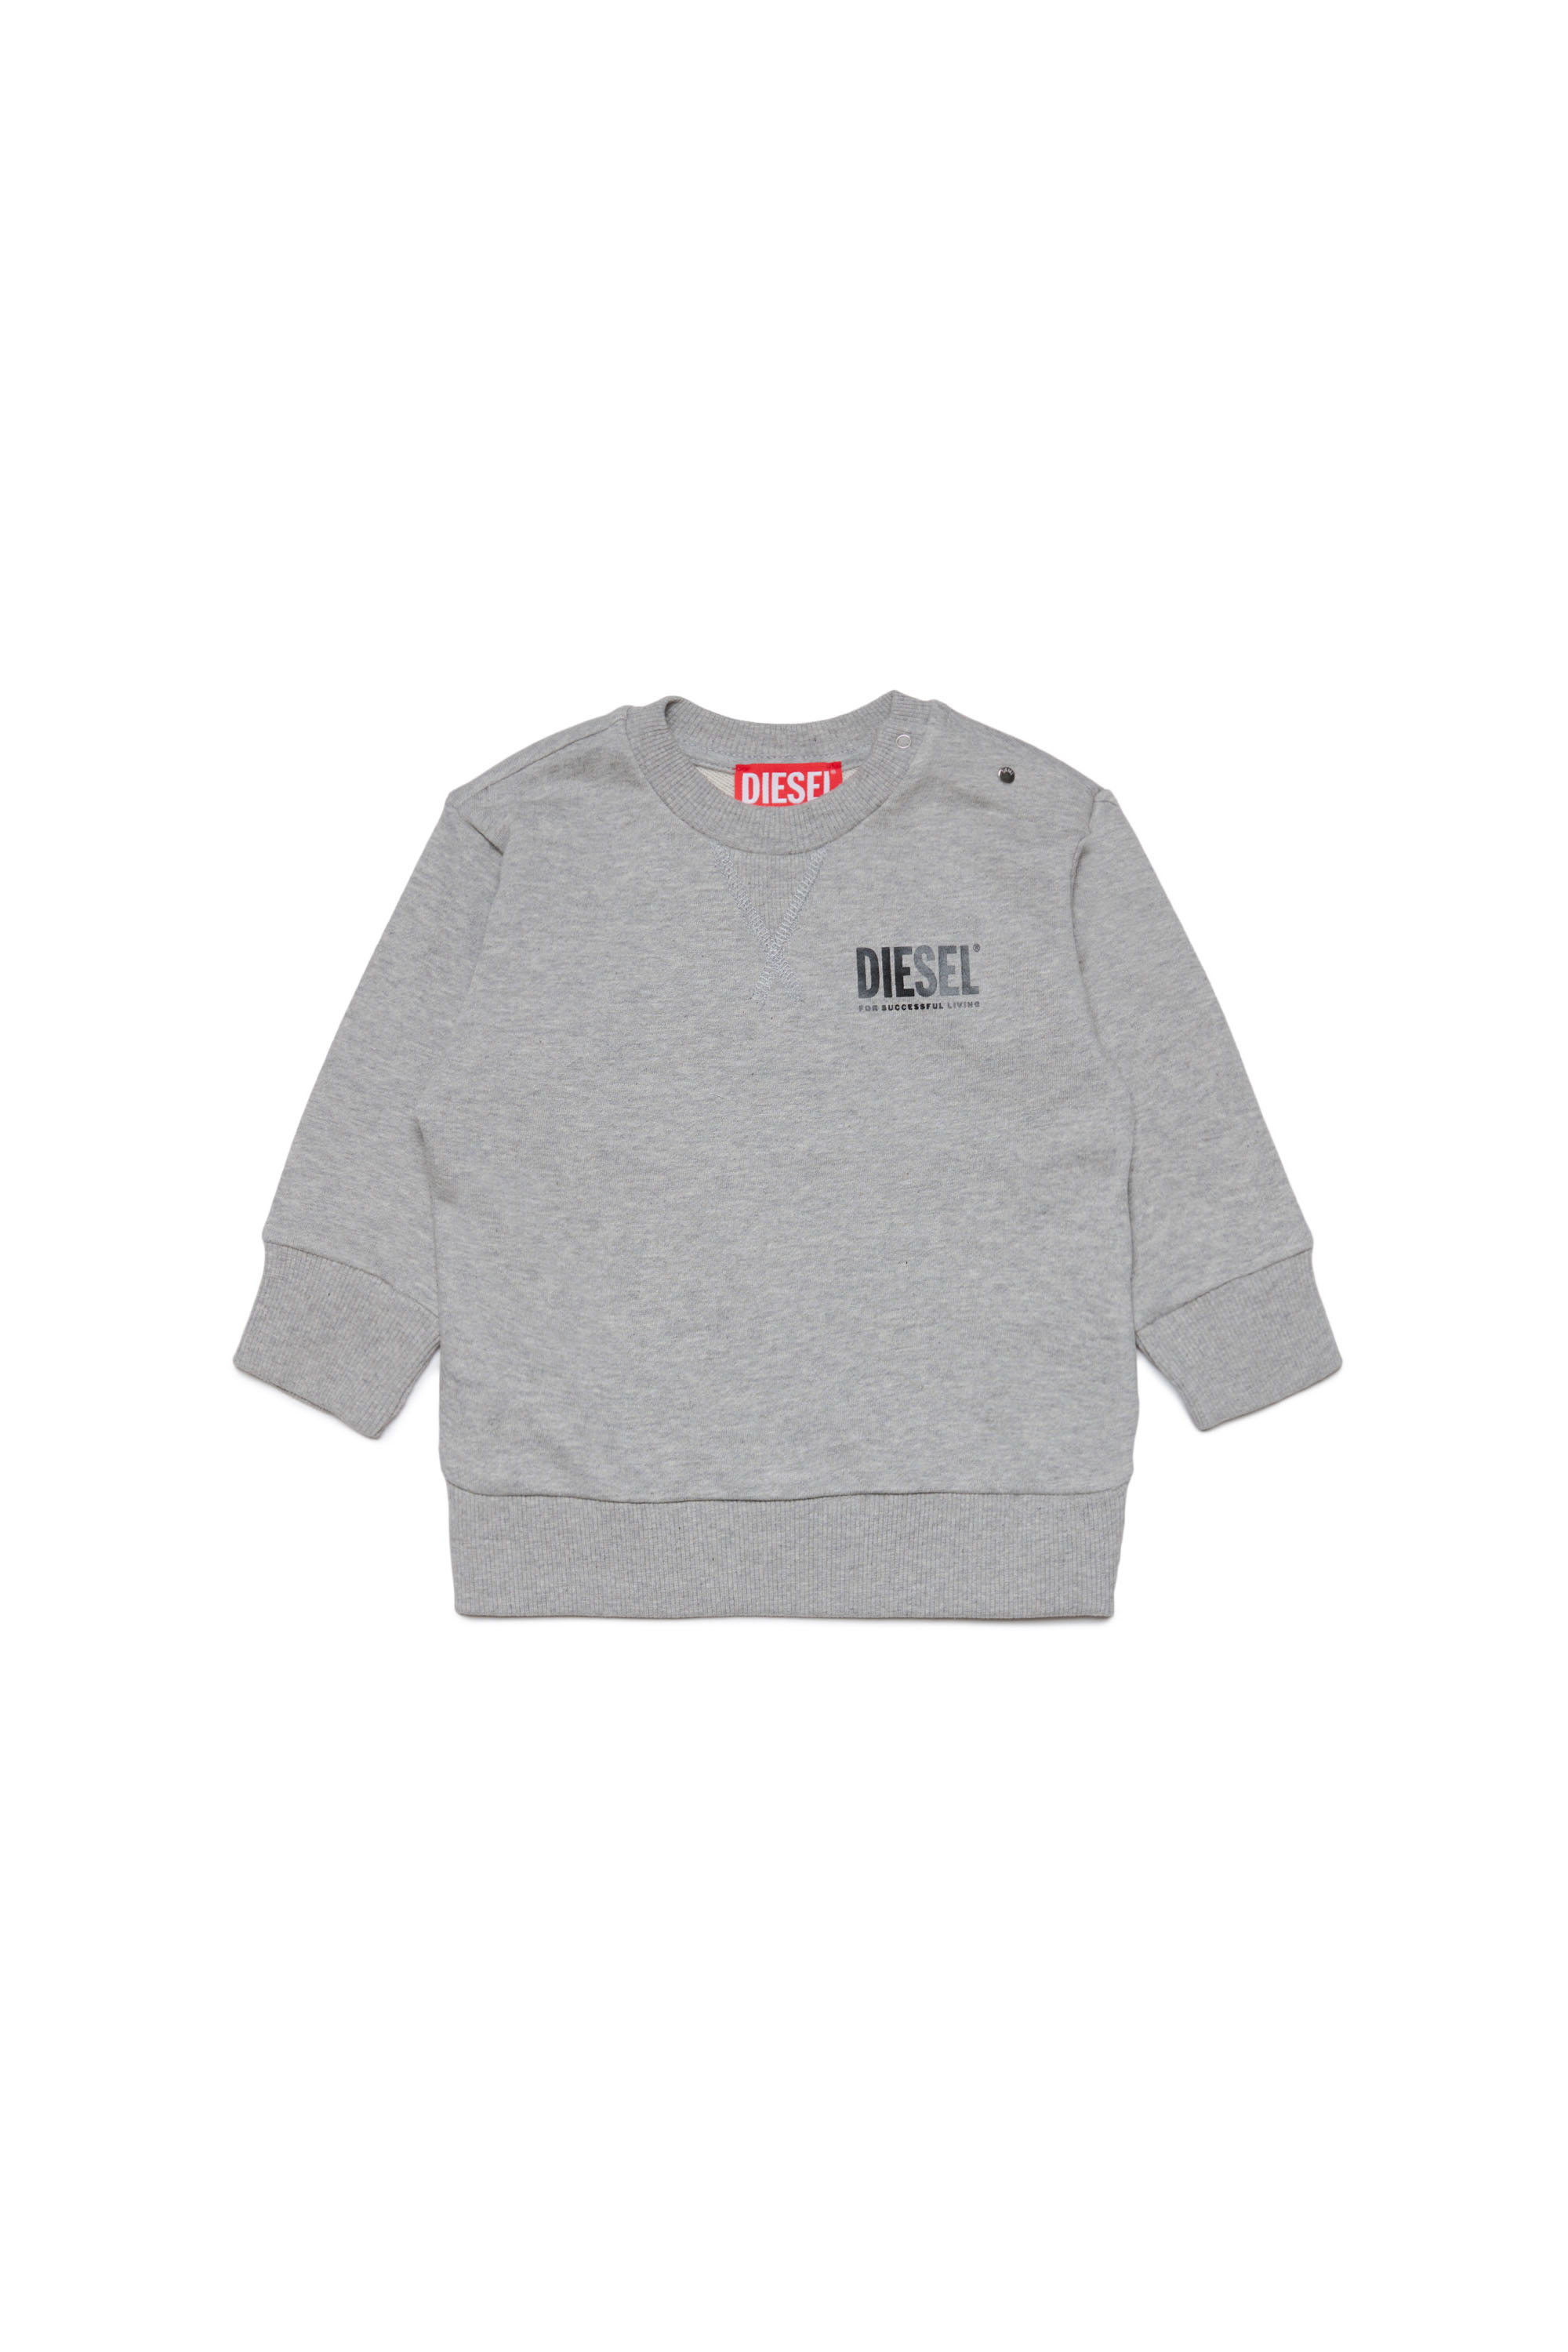 Diesel - Sweatshirt aus Baumwolle mit Logo-Print - Sweatshirts - Unisex - Grau